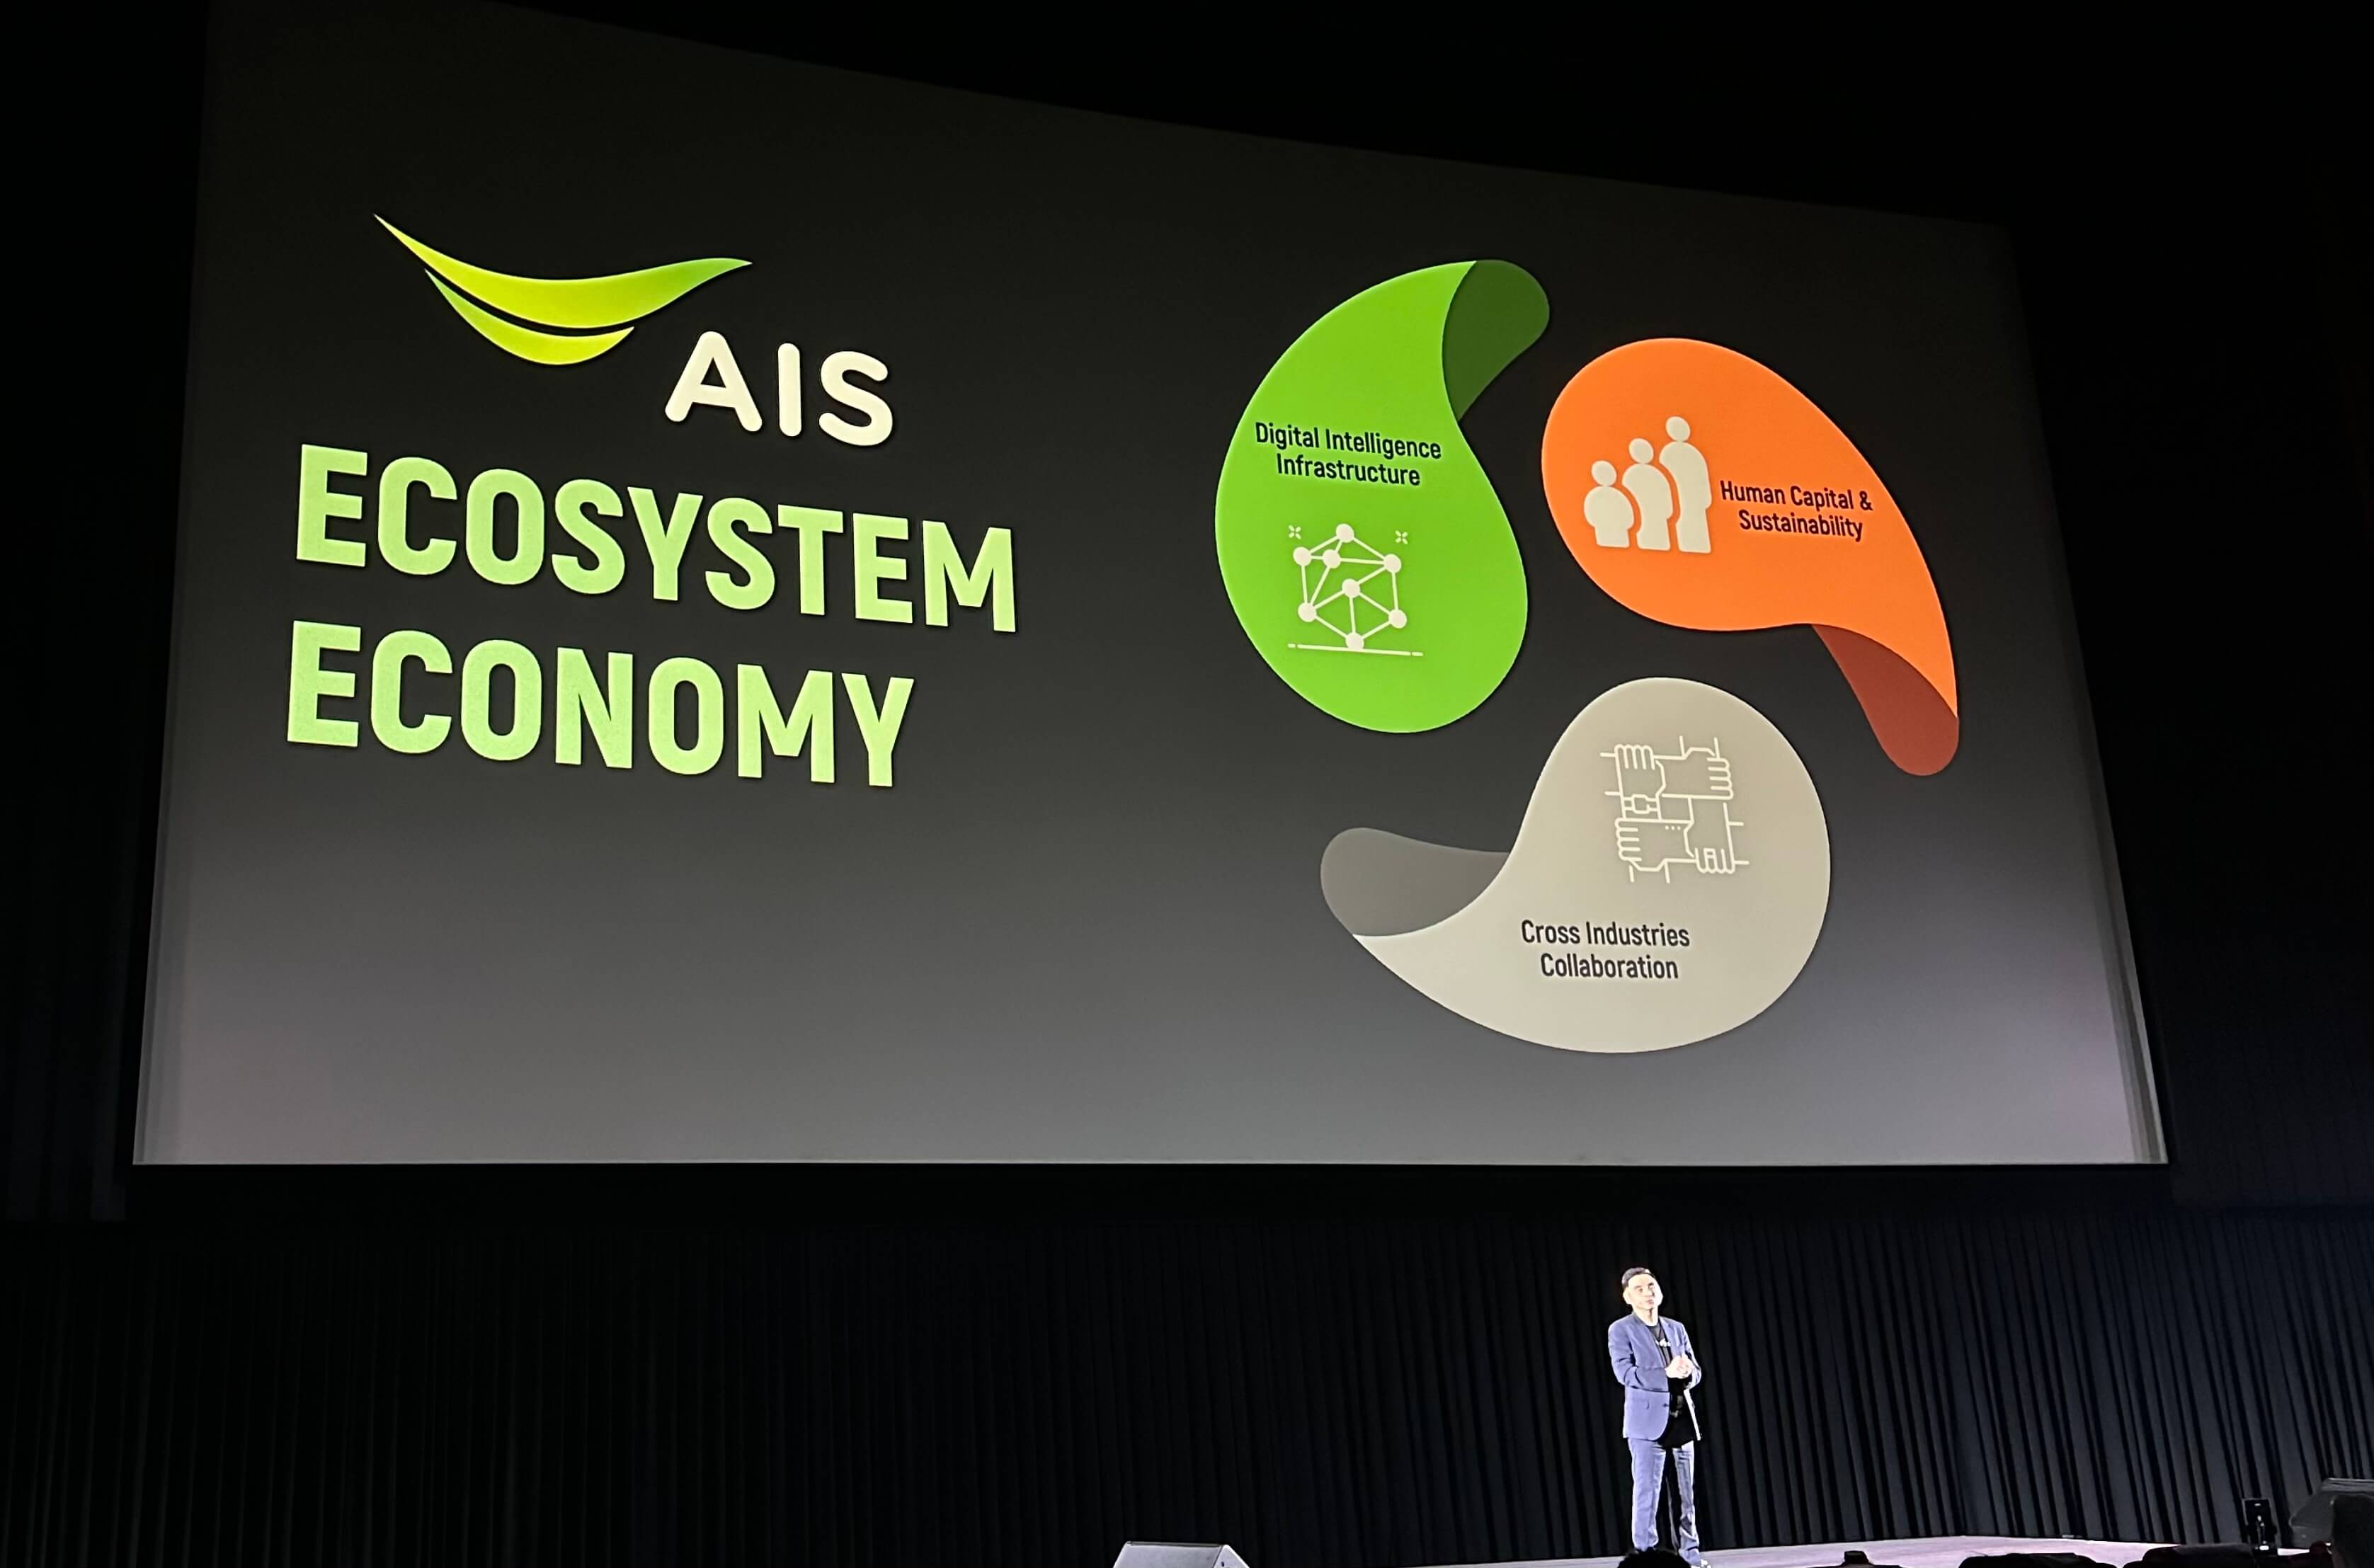 AIS ประกาศแผนการปี 2023  สร้าง Ecosystem Economy พาร์ทเนอร์ทุกฝ่าย เน้นย้ำไม่ผูกขาดเติบโตพร้อมกันทุกฝ่าย